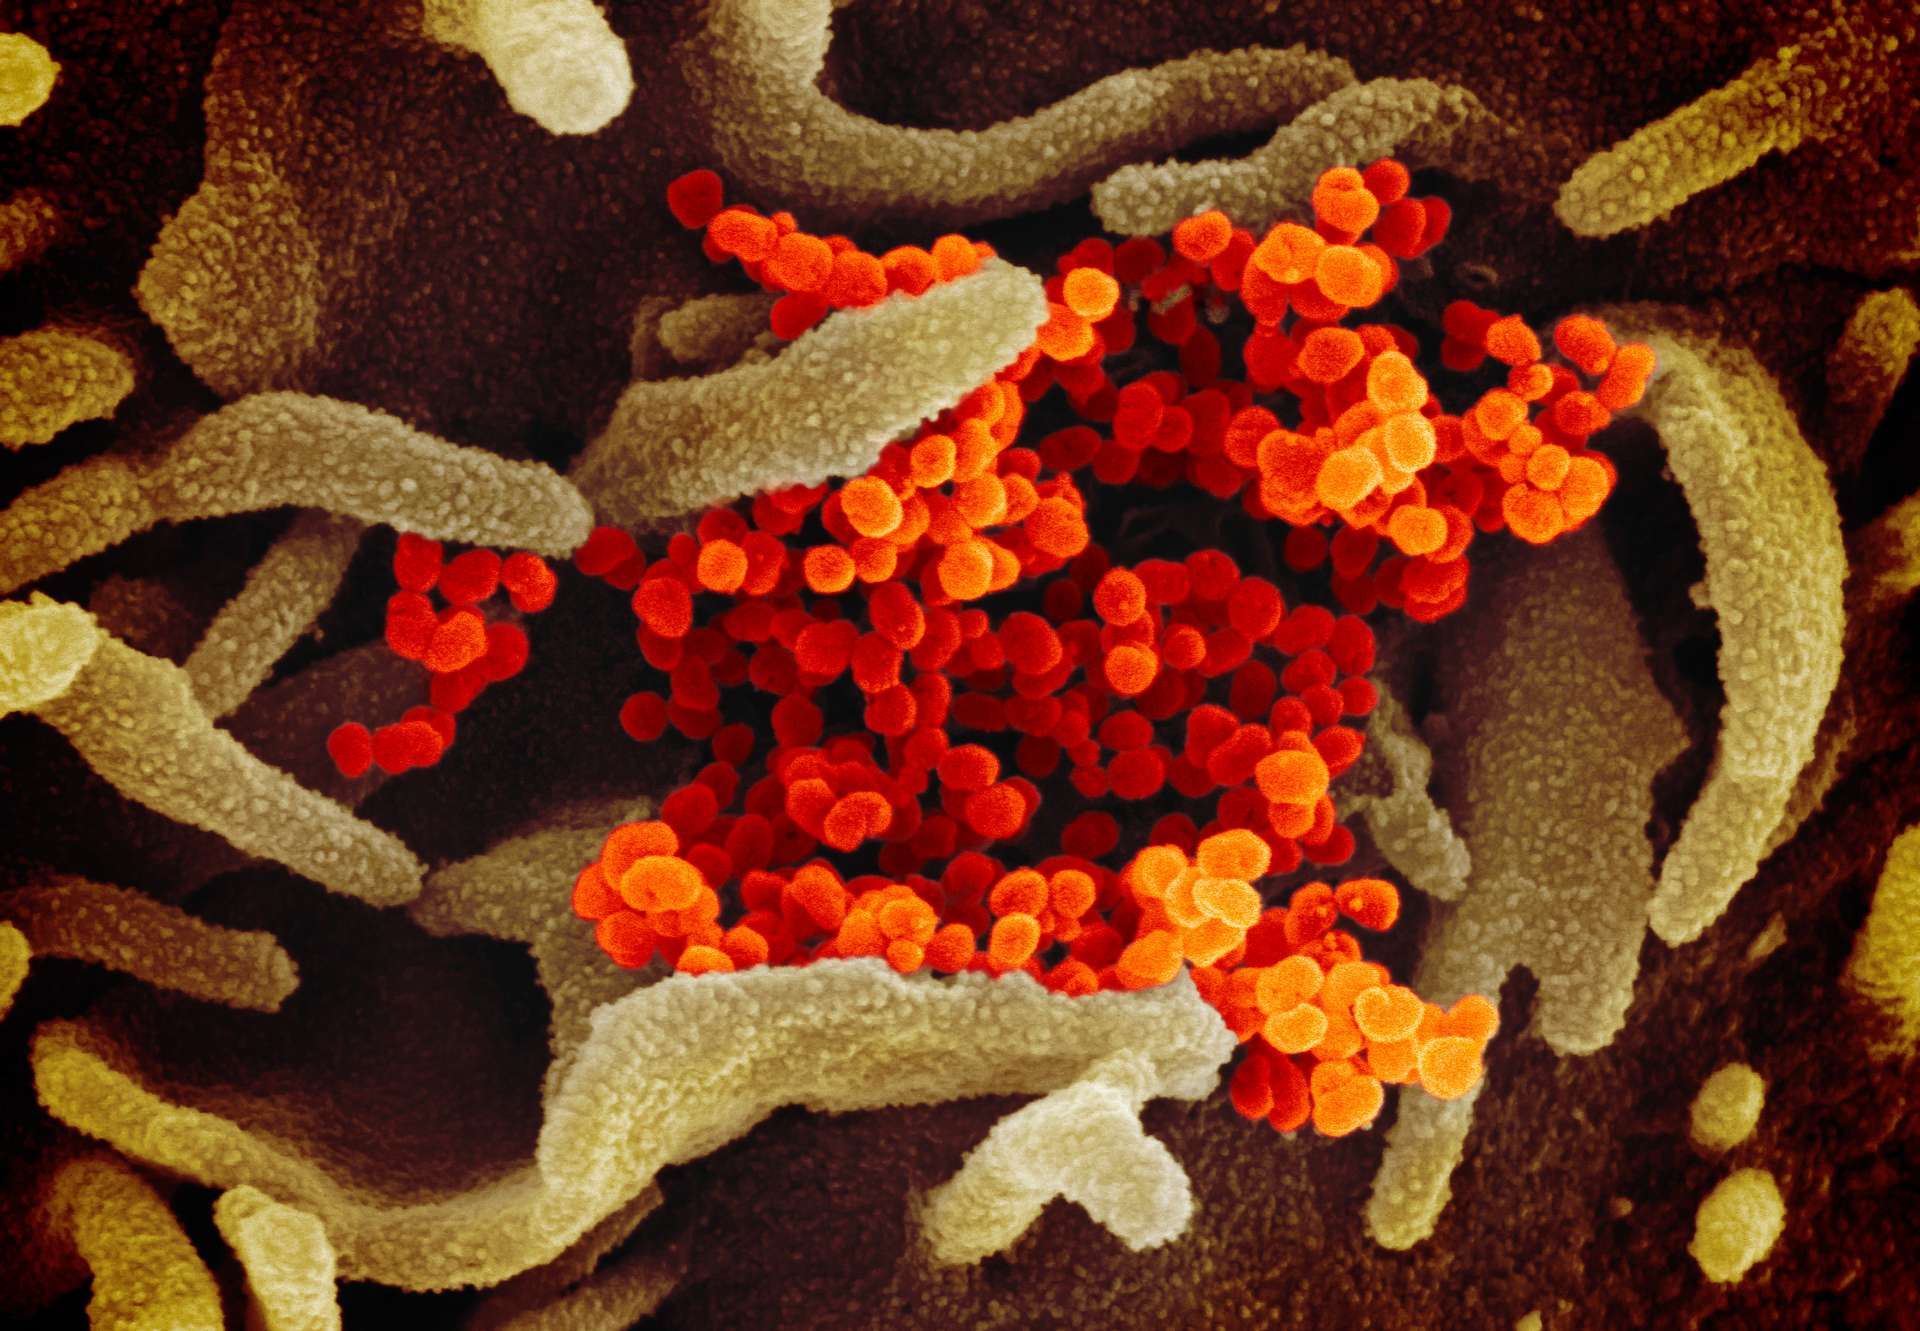 Morocco Announces 3rd Coronavirus Case